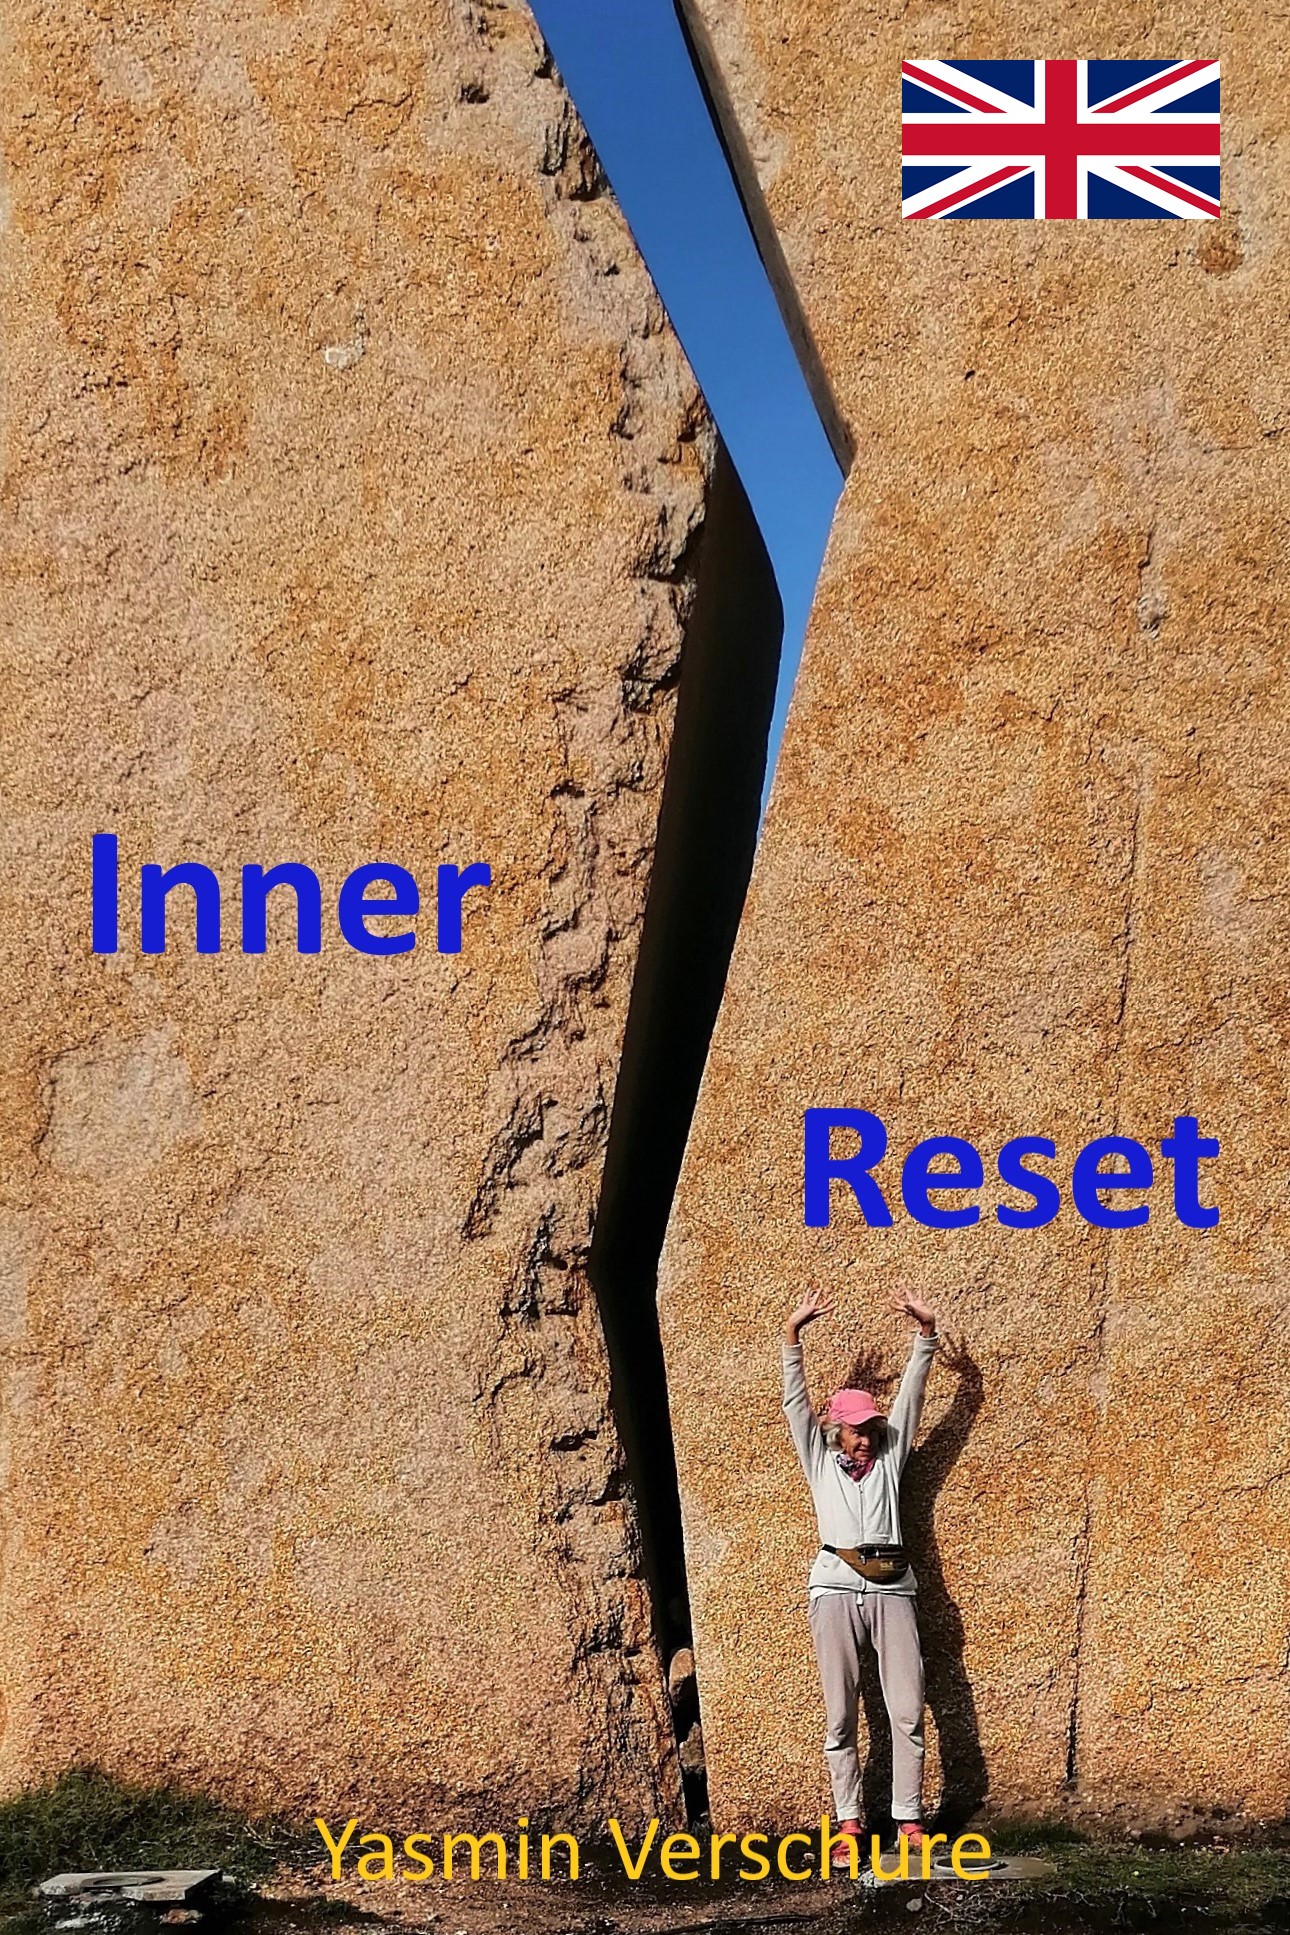 Inner Reset